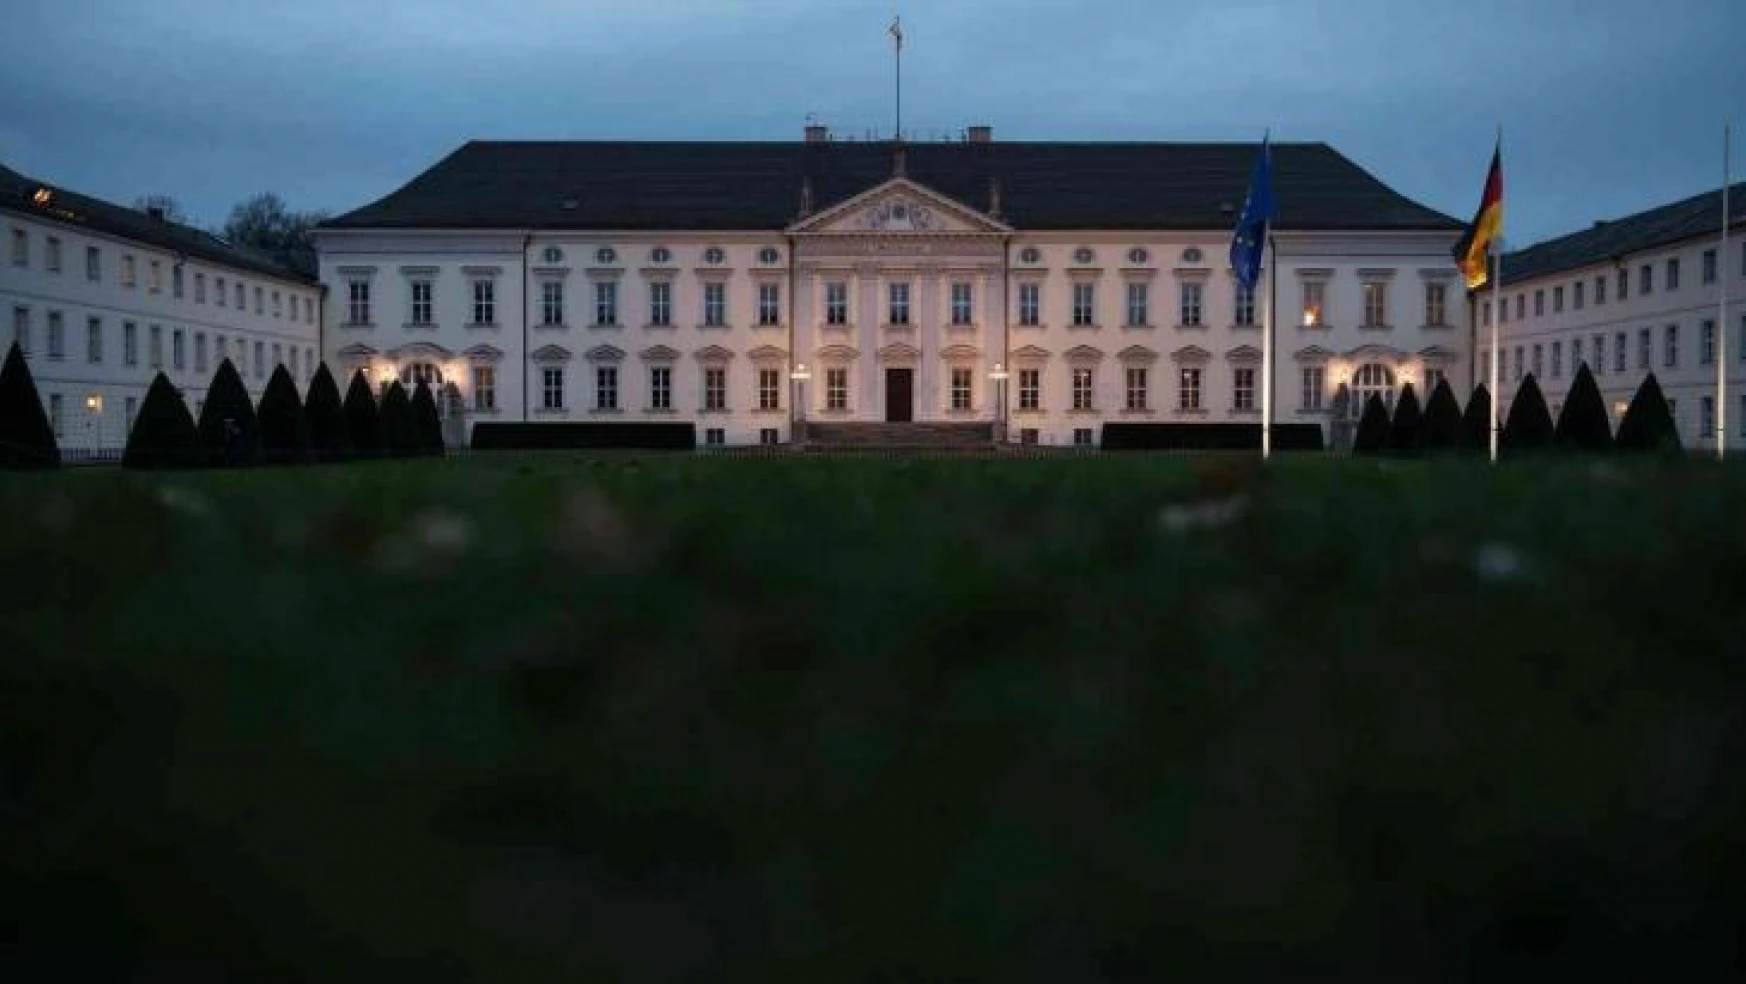 Almanya'da Cumhurbaşkanlığı Sarayı'nın ışıkları tasarruf için söndürülecek